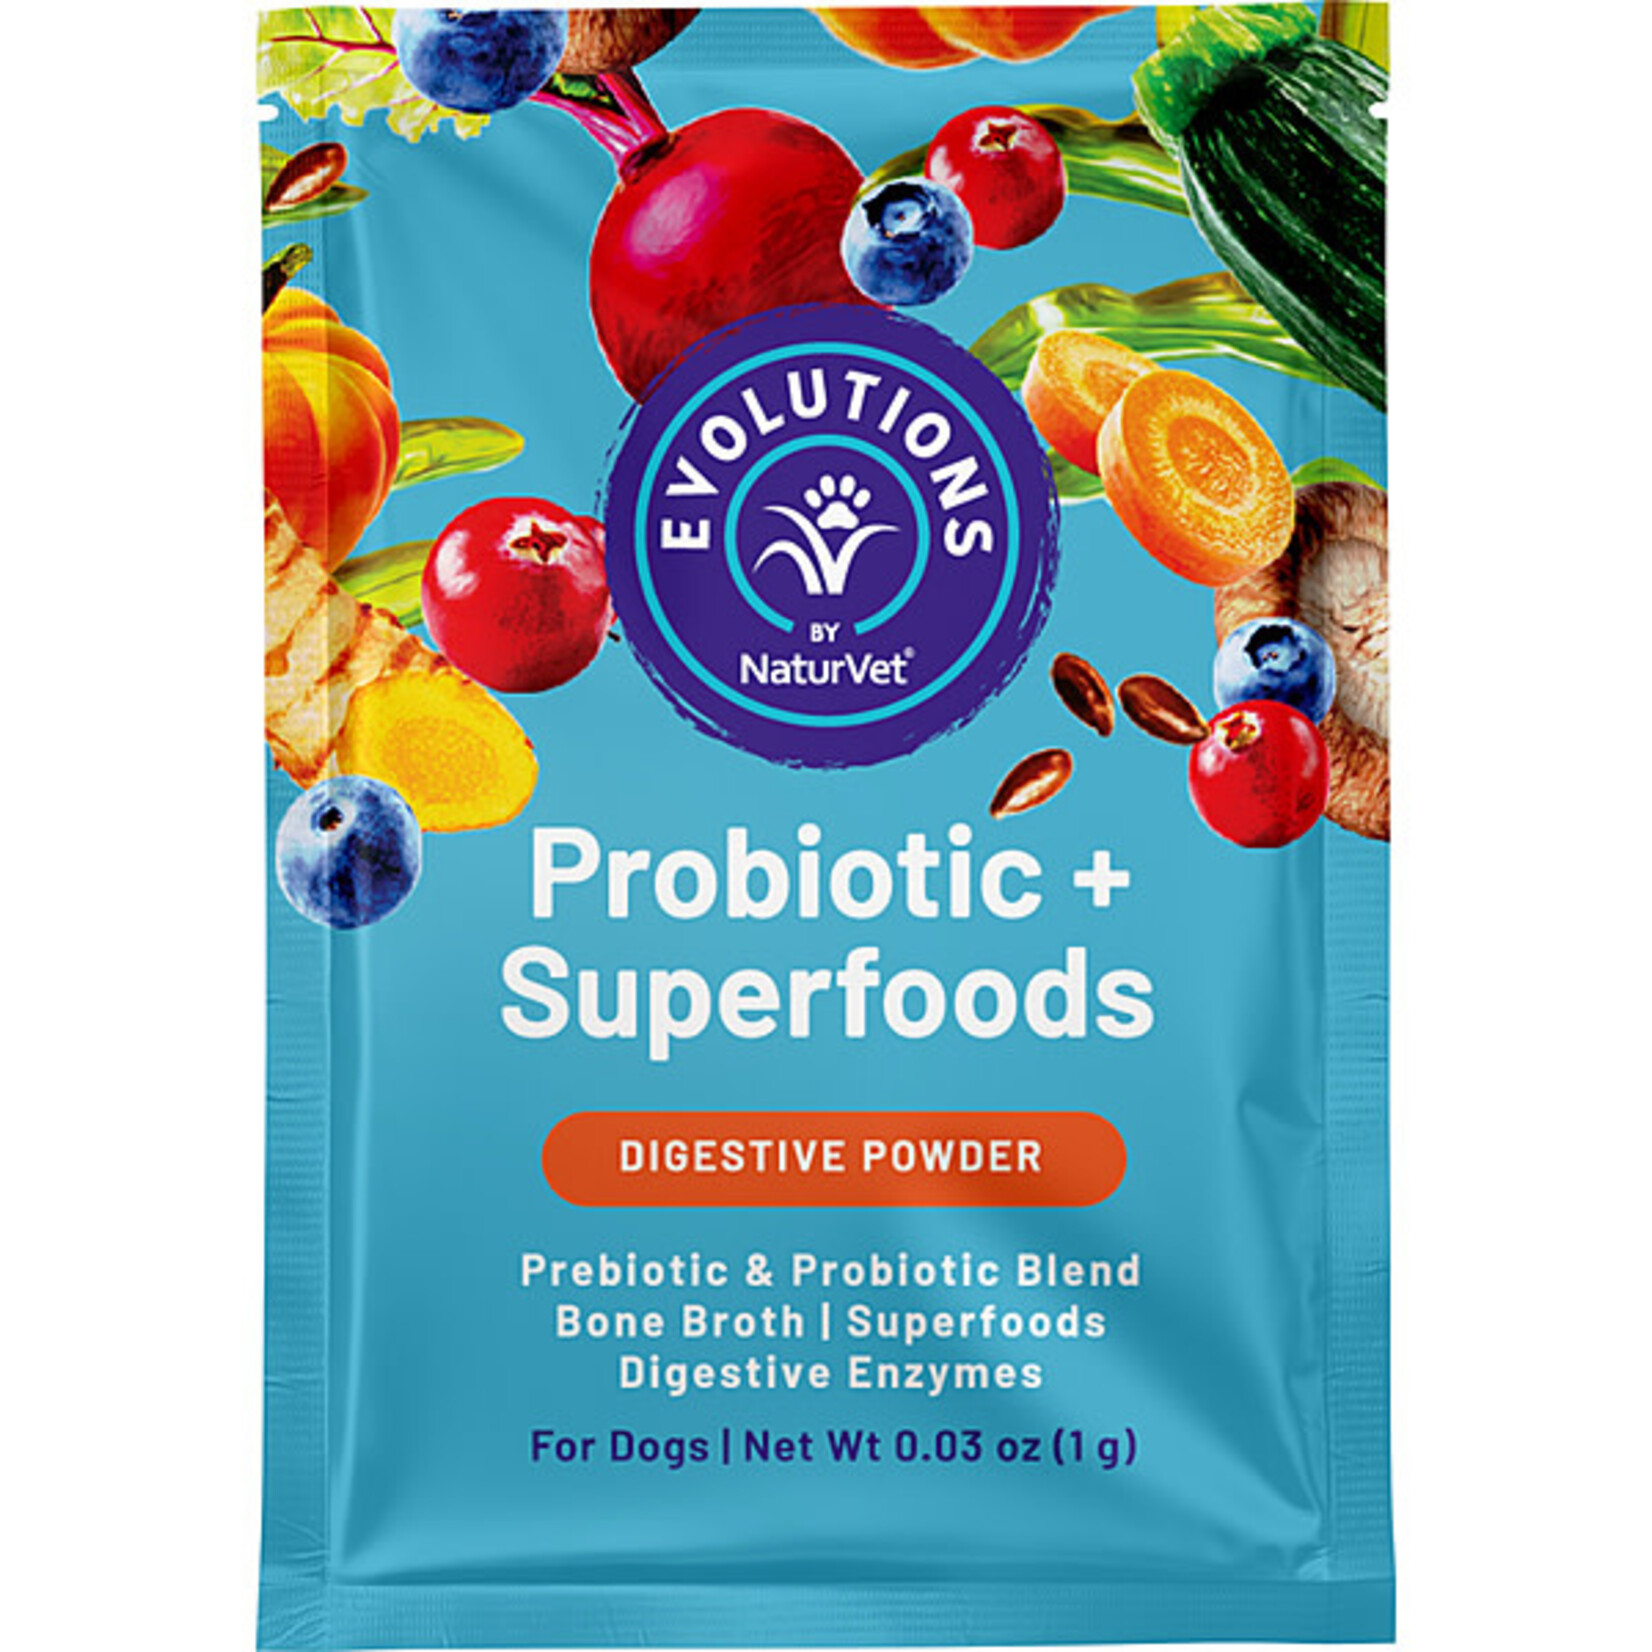 NaturVet Probiotic + Superfoods Digestive Powder 30sachts (30g )for dog